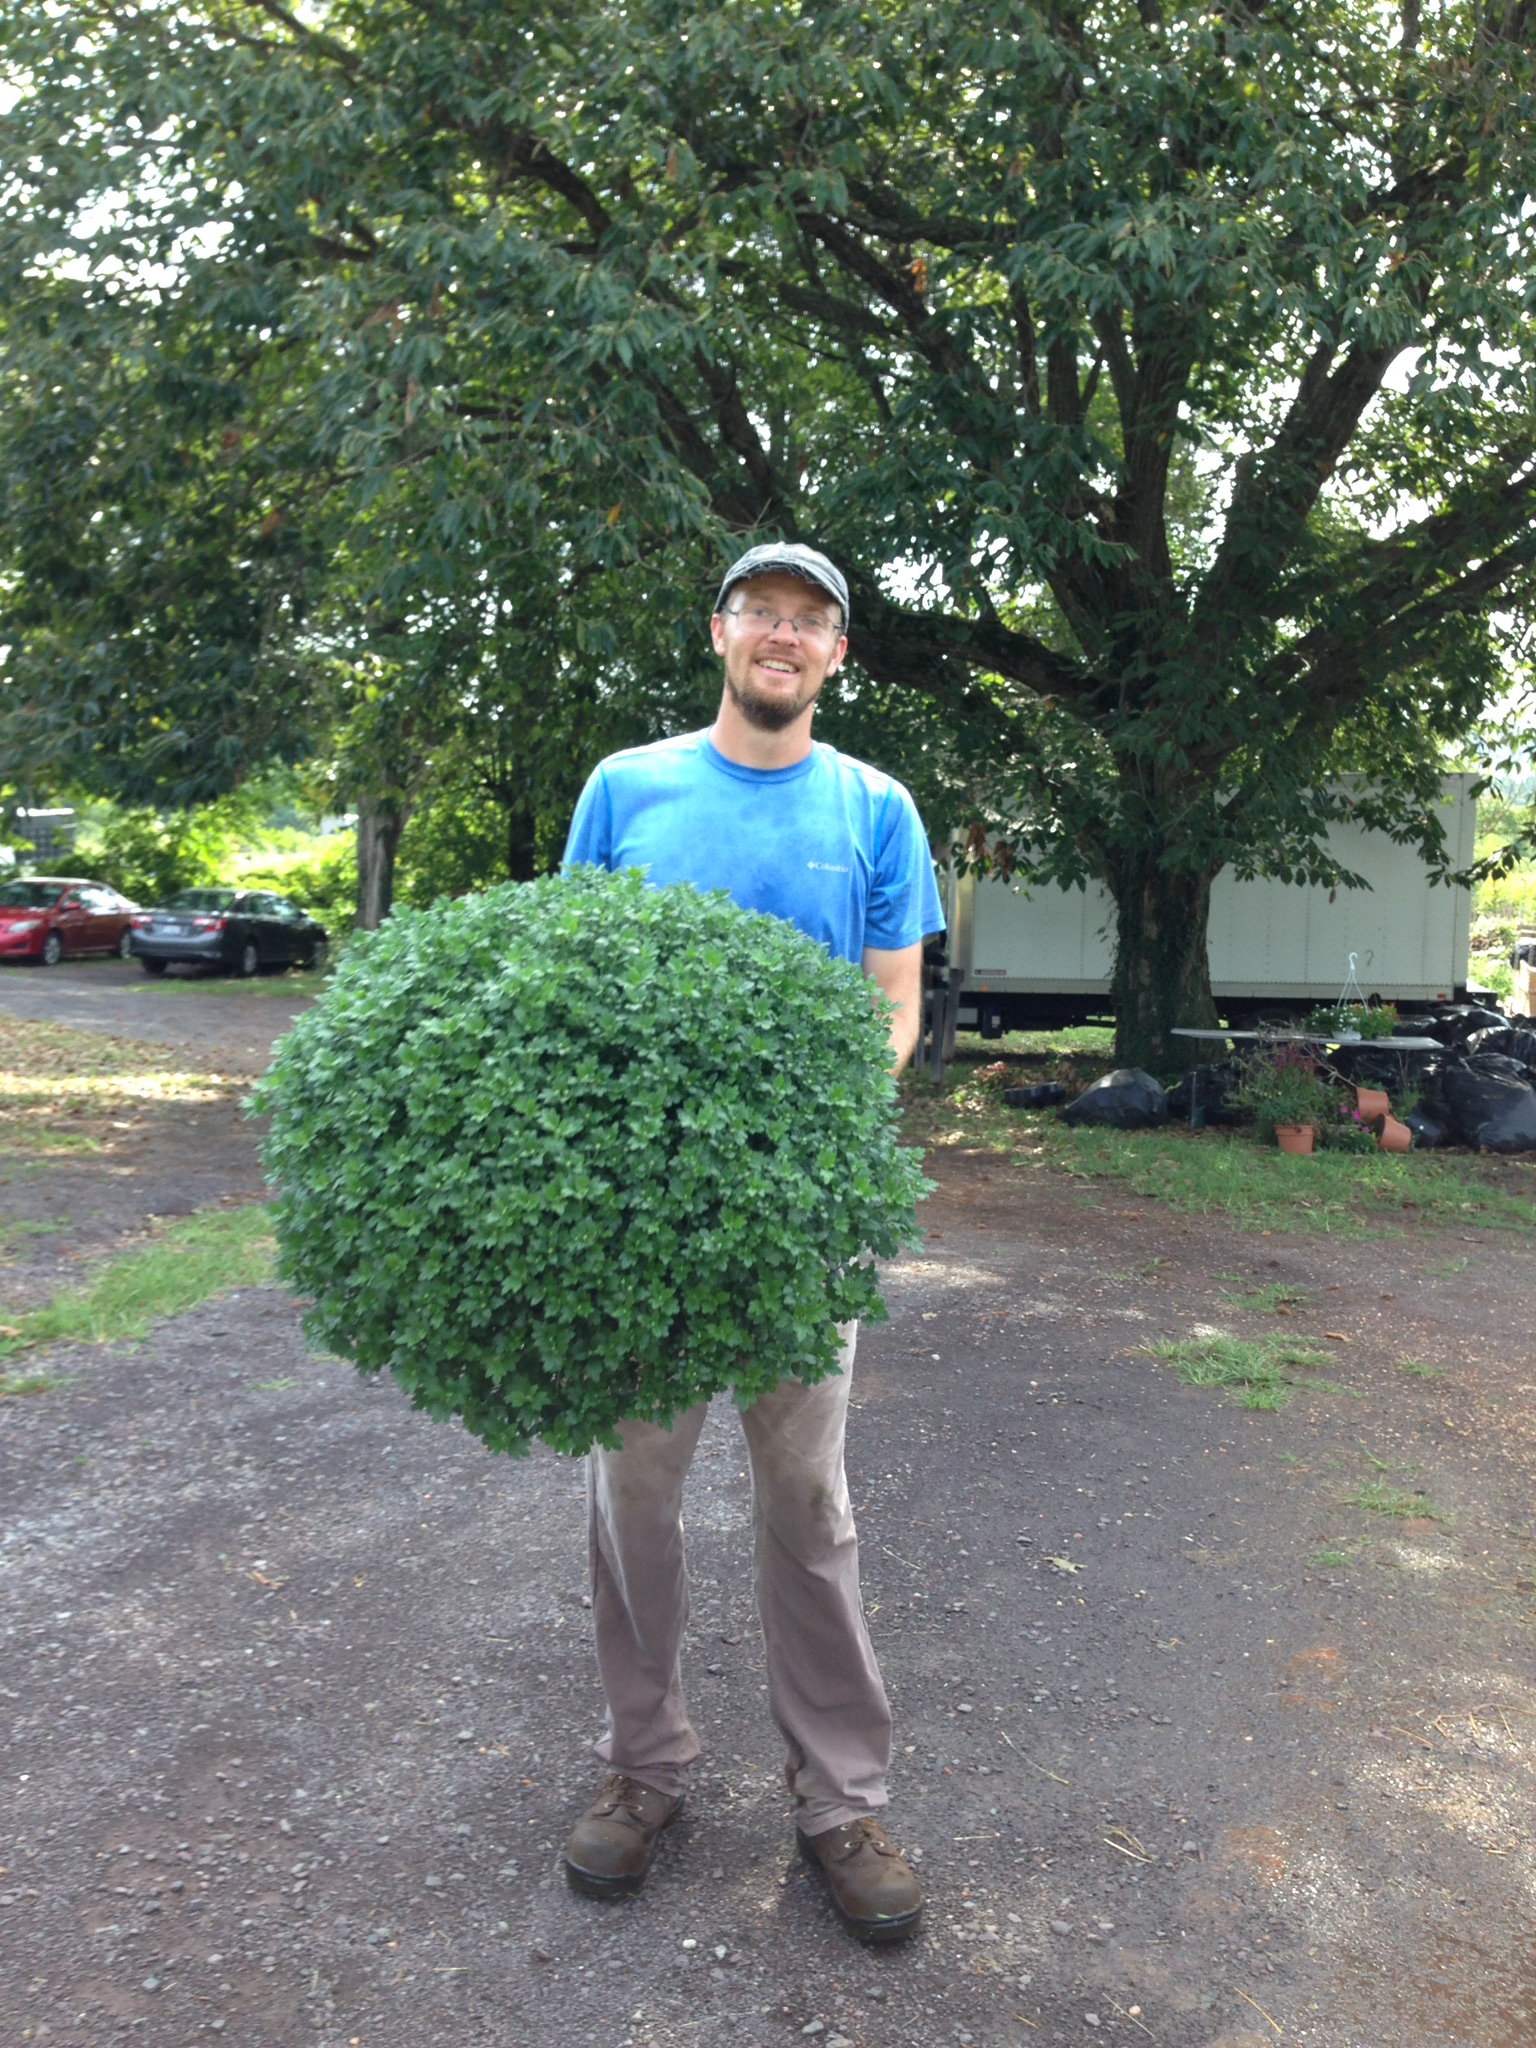 Man holding large plant